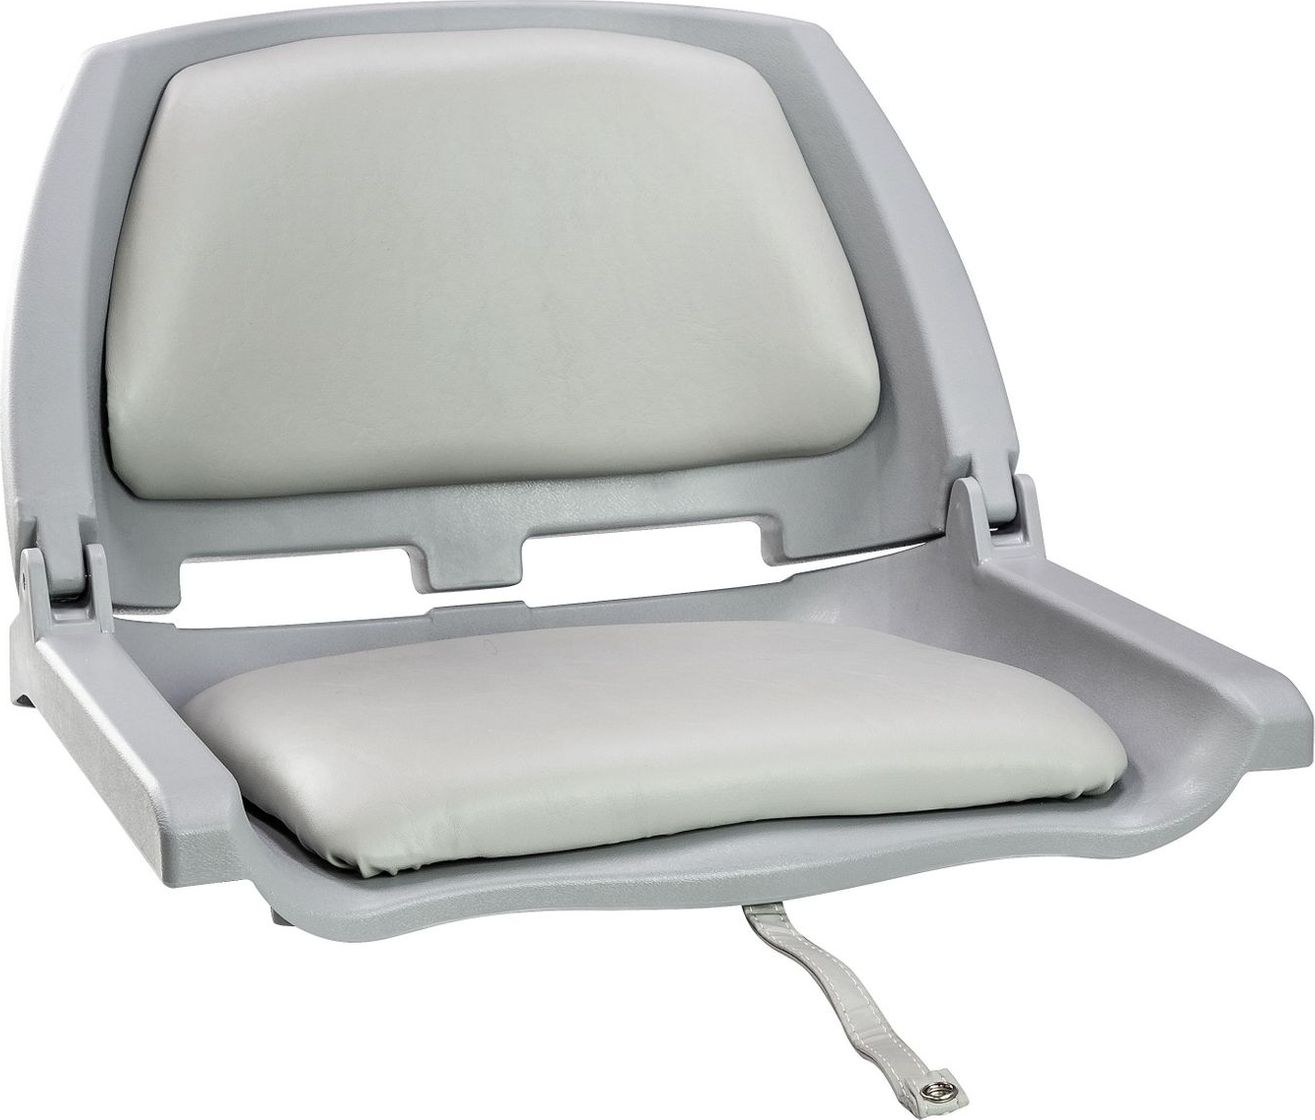 Кресло складное мягкое TRAVELER, цвет серый/серый (упаковка из 2 шт.) 1061100C_pkg_2 подставка под кресло вращающаяся с креплением к баночке надувной лодки упаковка из 2 шт c12565 pkg 2